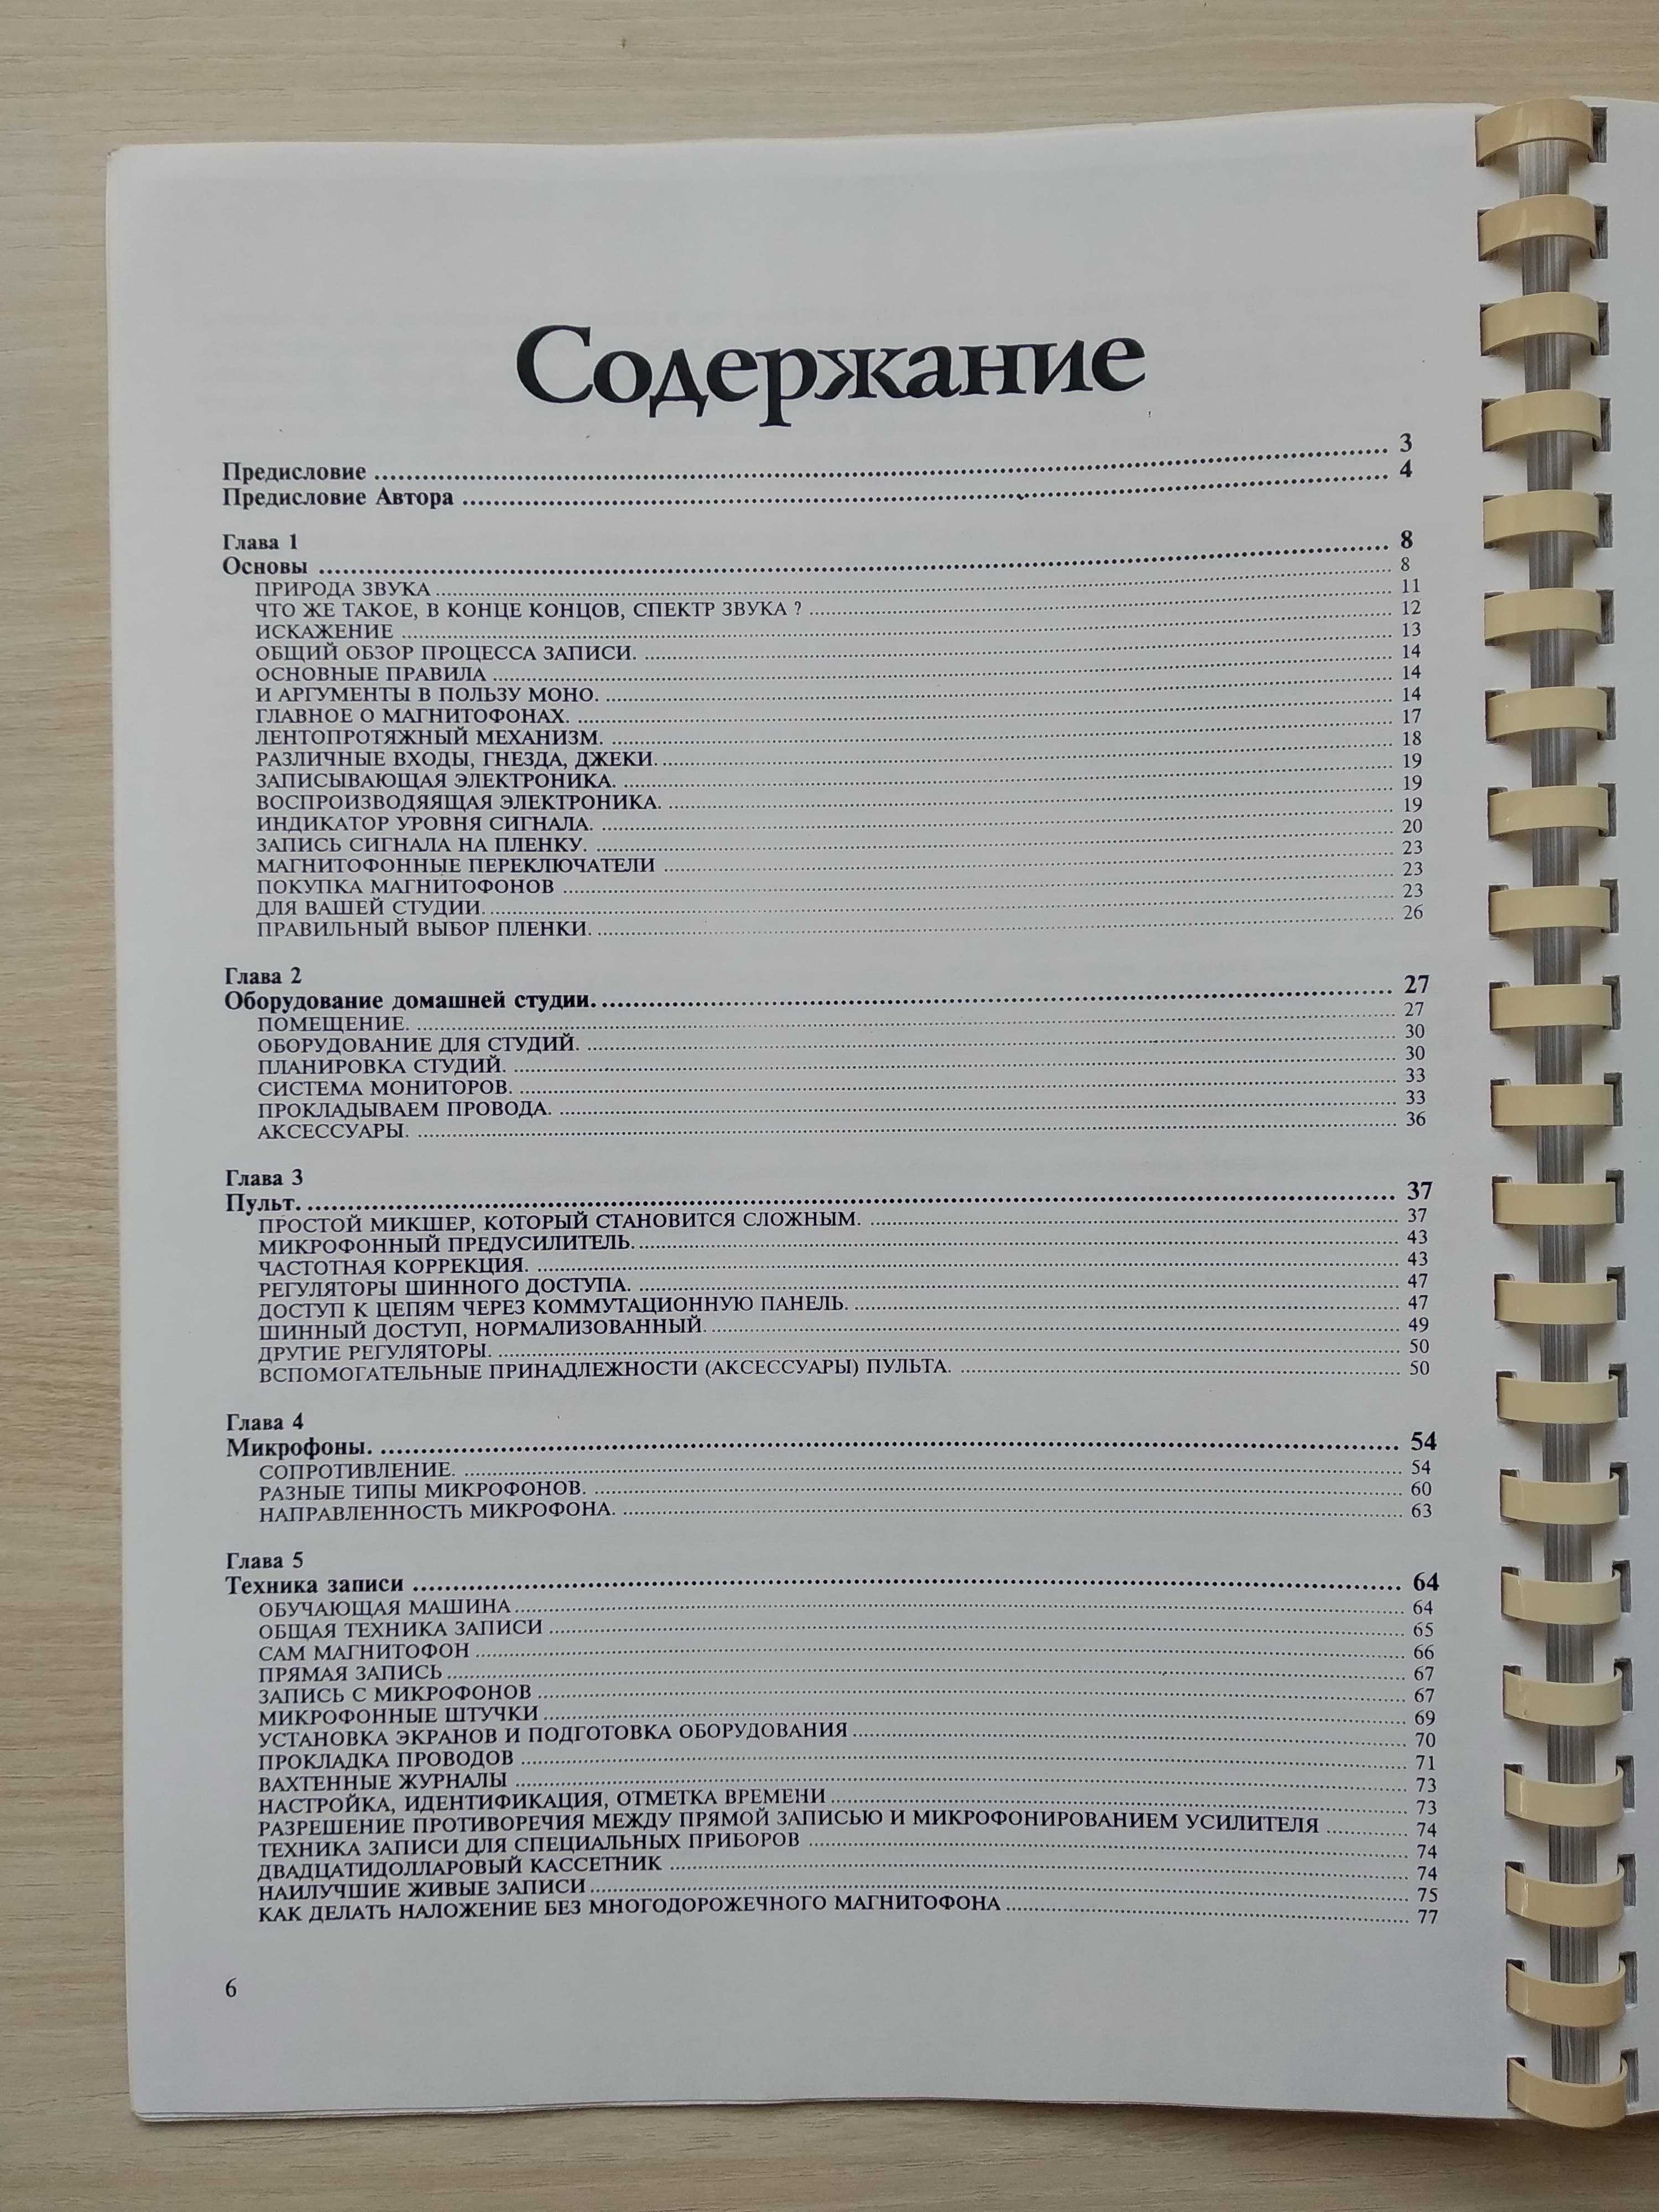 Домашняя звукозапись для музыкантов (in/out 1997)